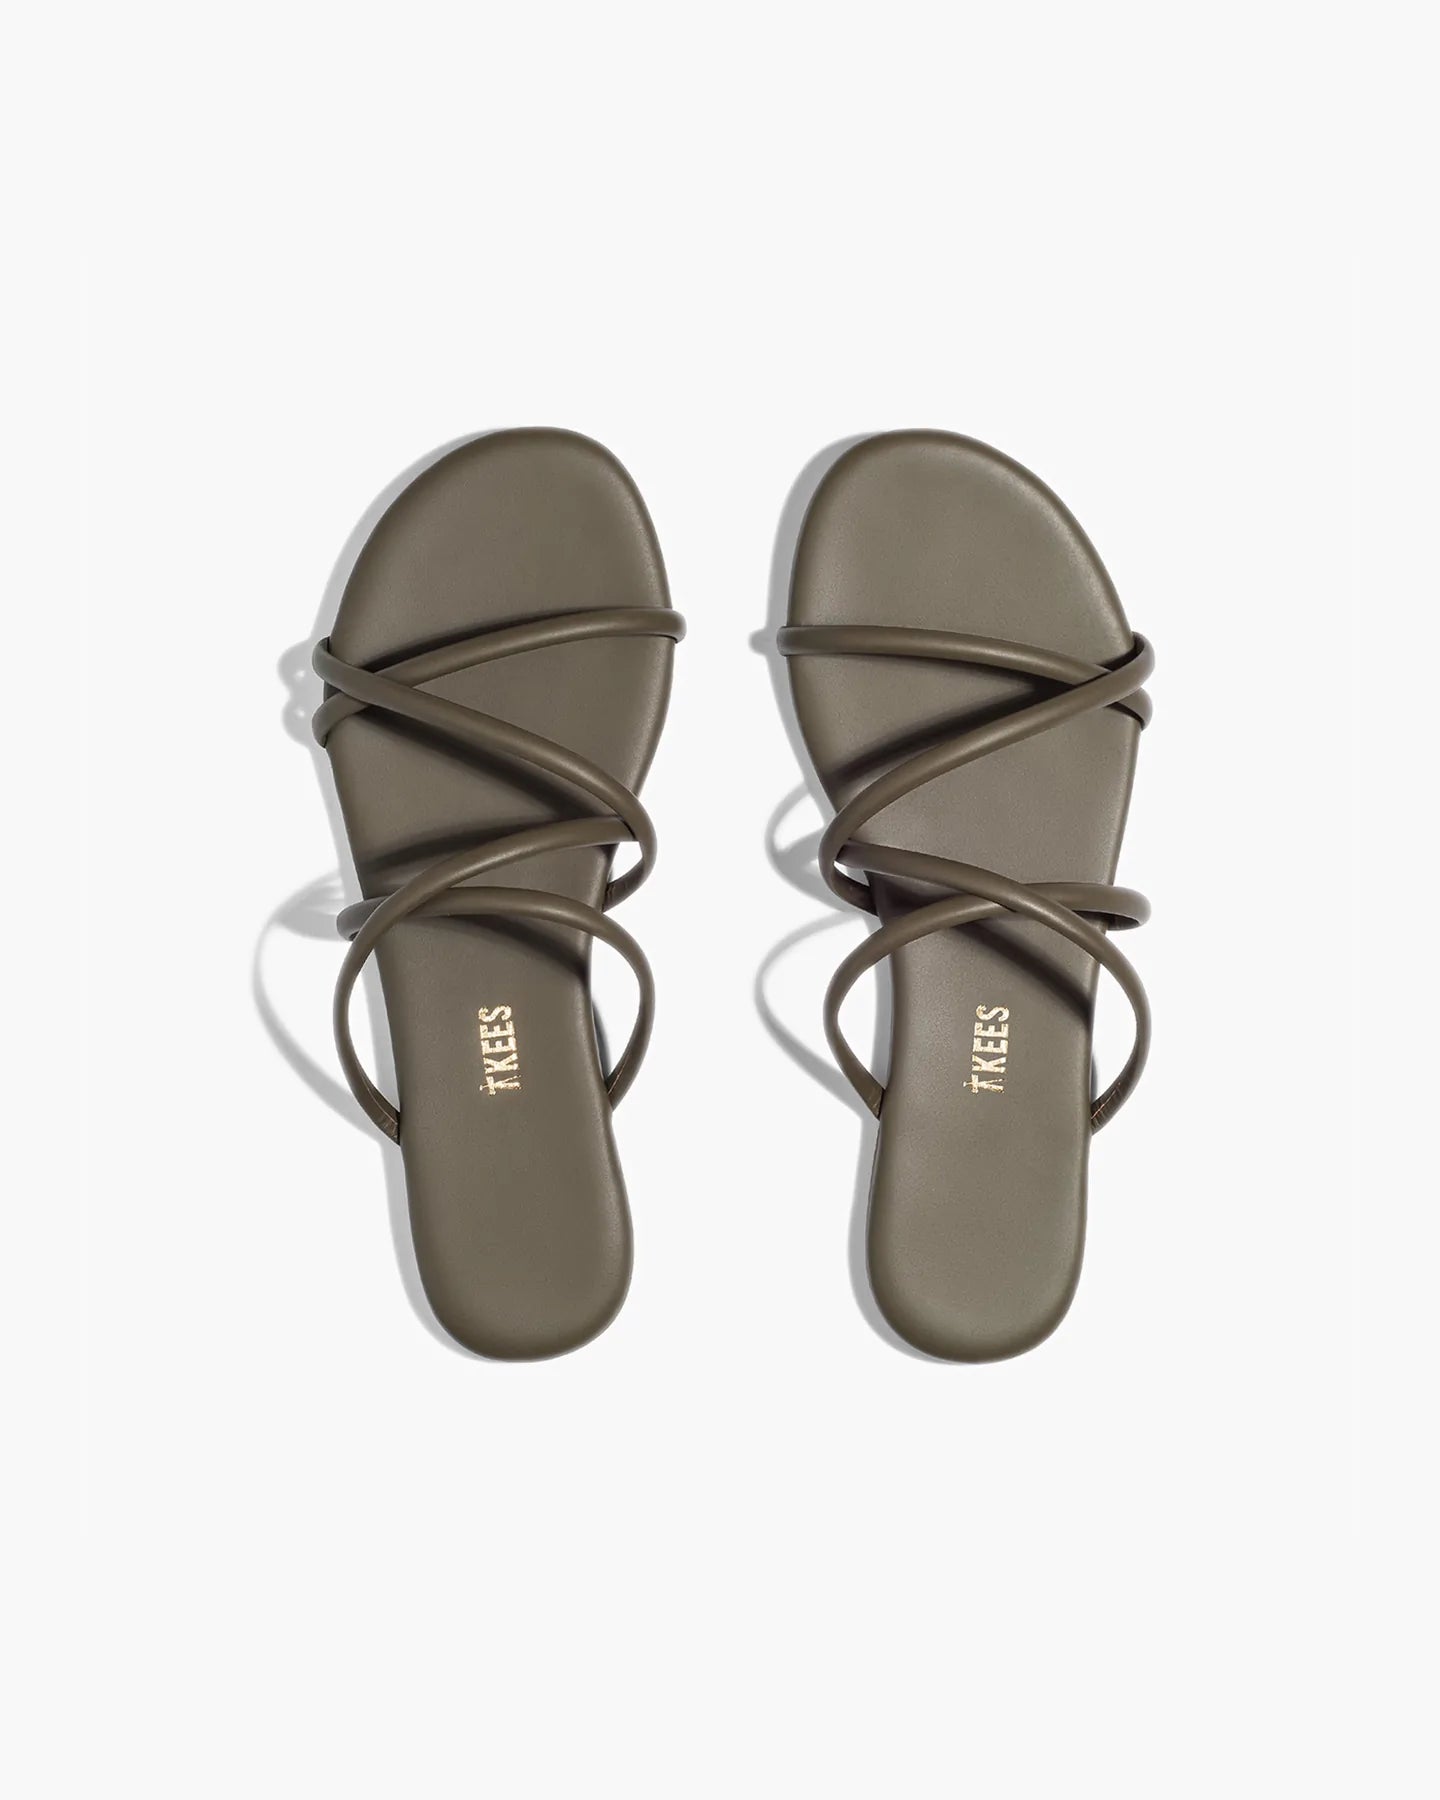 sloane-sandal-olive-1_1800x1800_jpg.webp